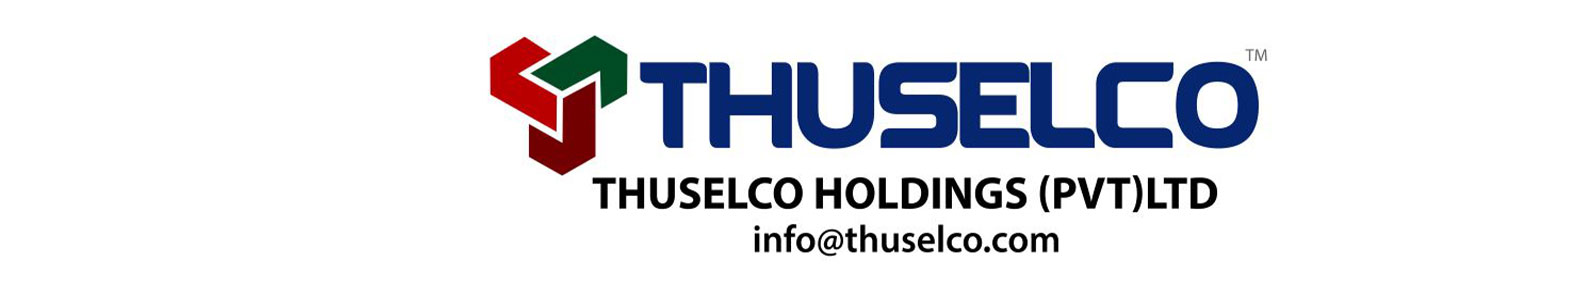 THUSELCO HOLDINGS PVT LTD